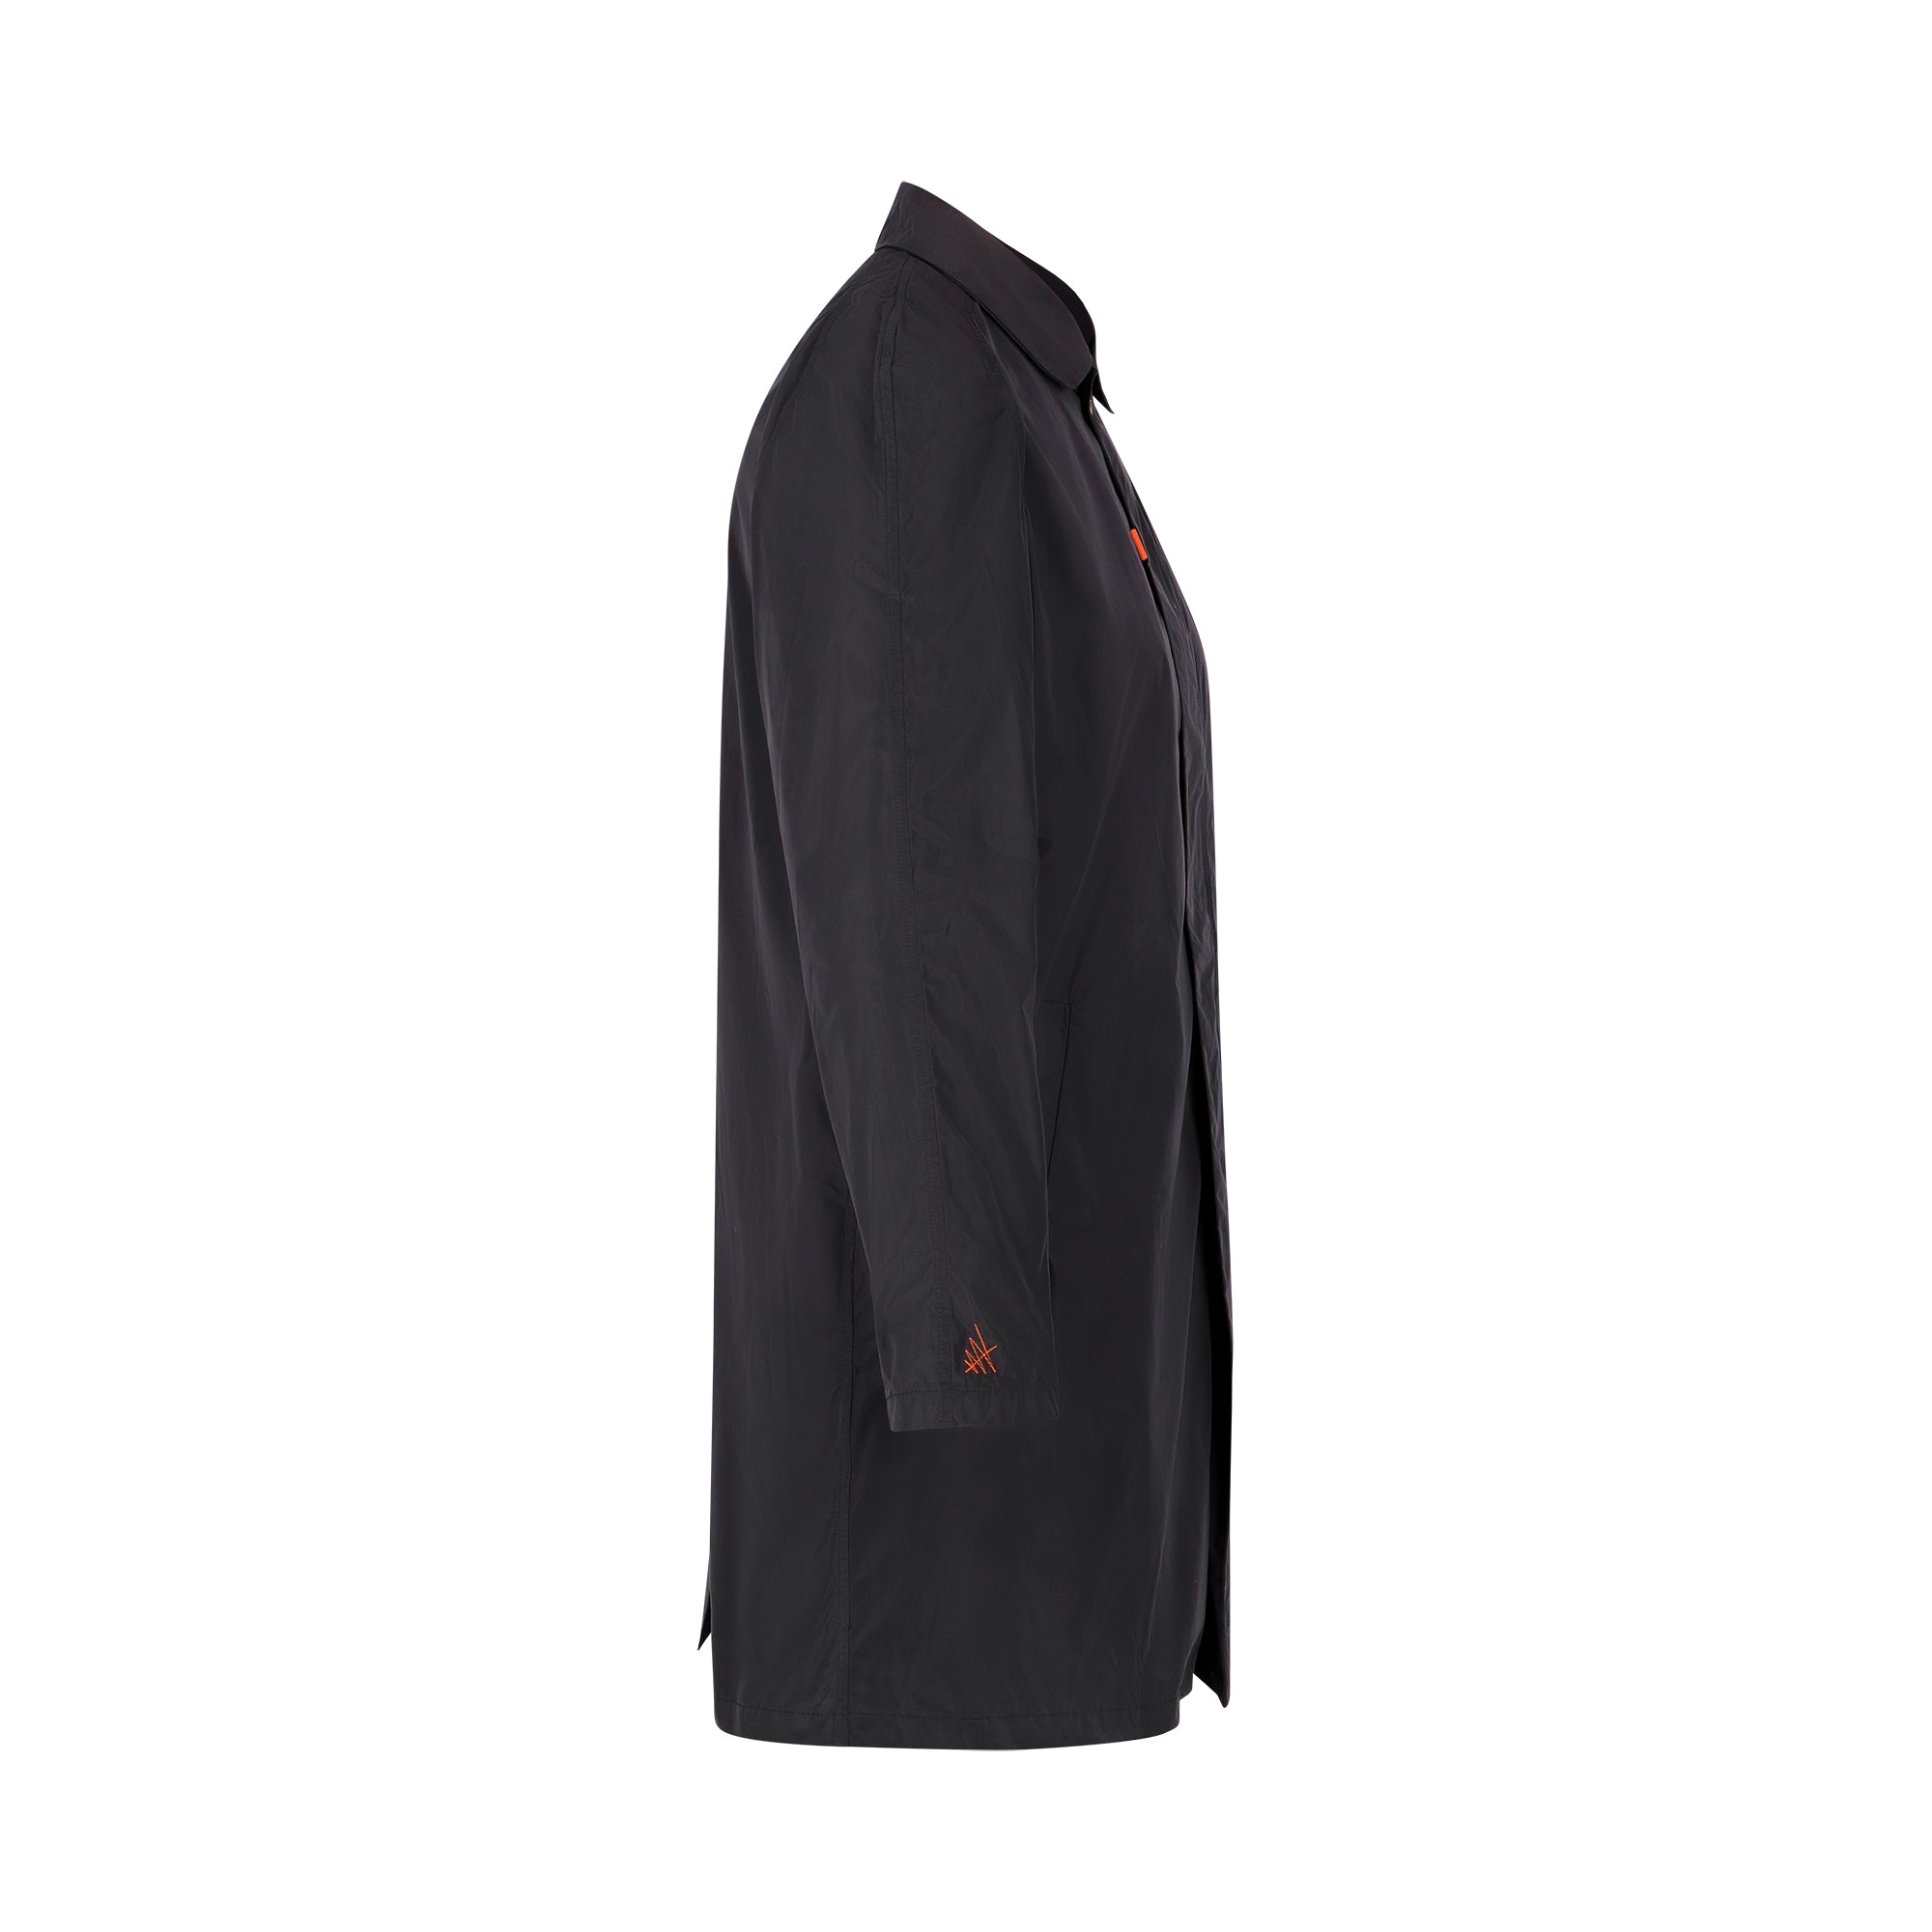 Strato men's raincoat - dark blue color - side view